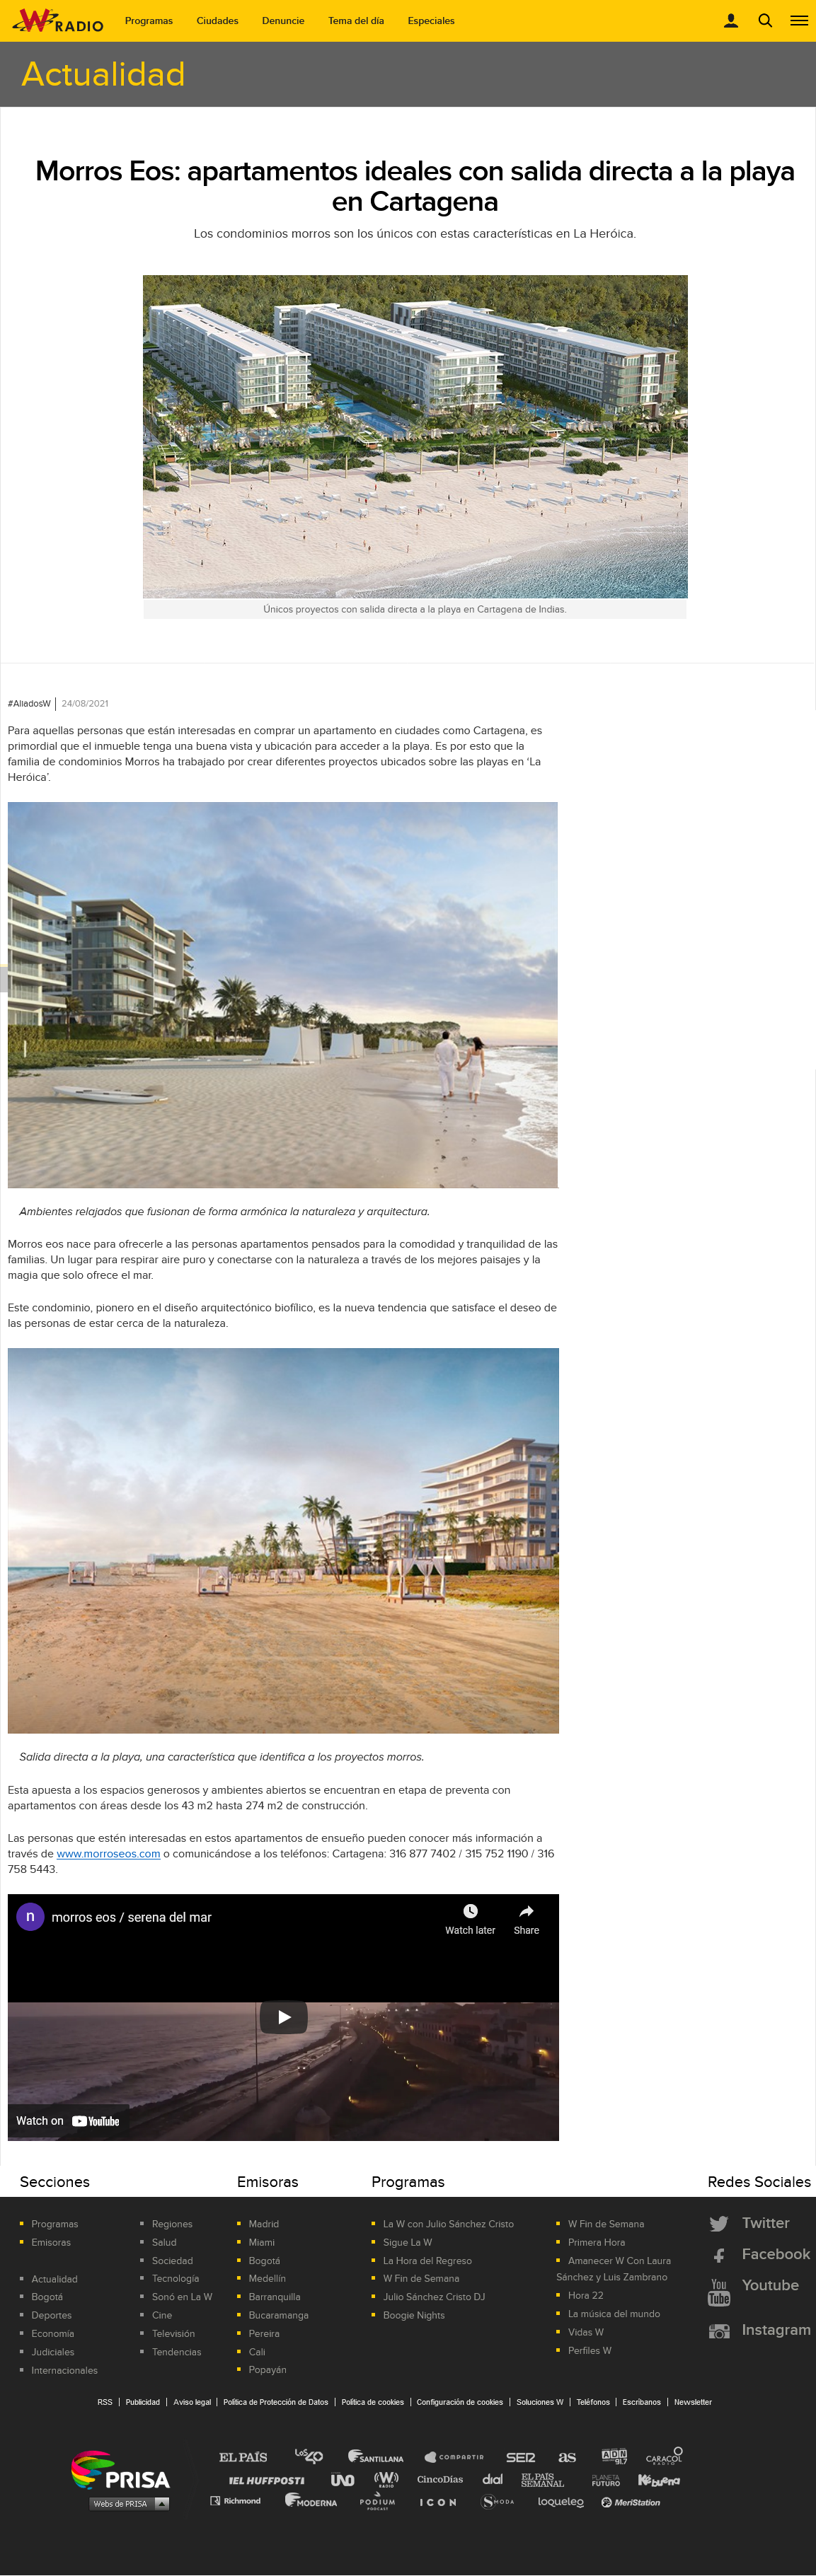 Morros Eos: apartamentos ideales con salida directa a la playa en Cartagena